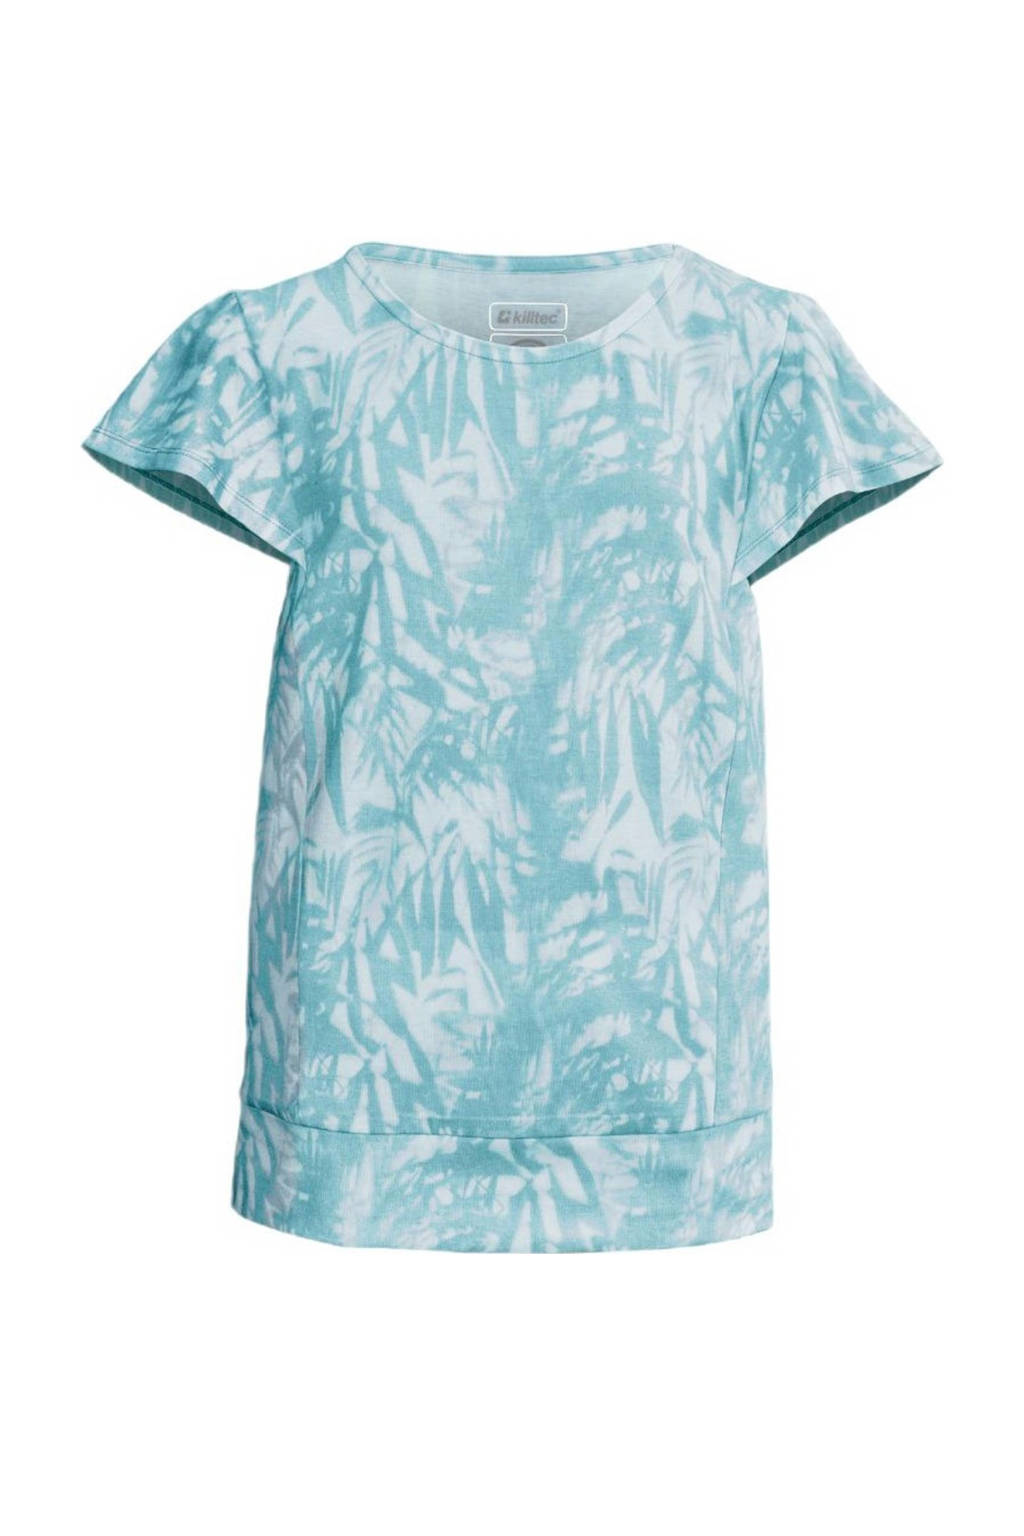 Lichtblauw en witte jongens en meisjes Killtec T-shirt Kos 48 van polyester met all over print, korte mouwen en ronde hals